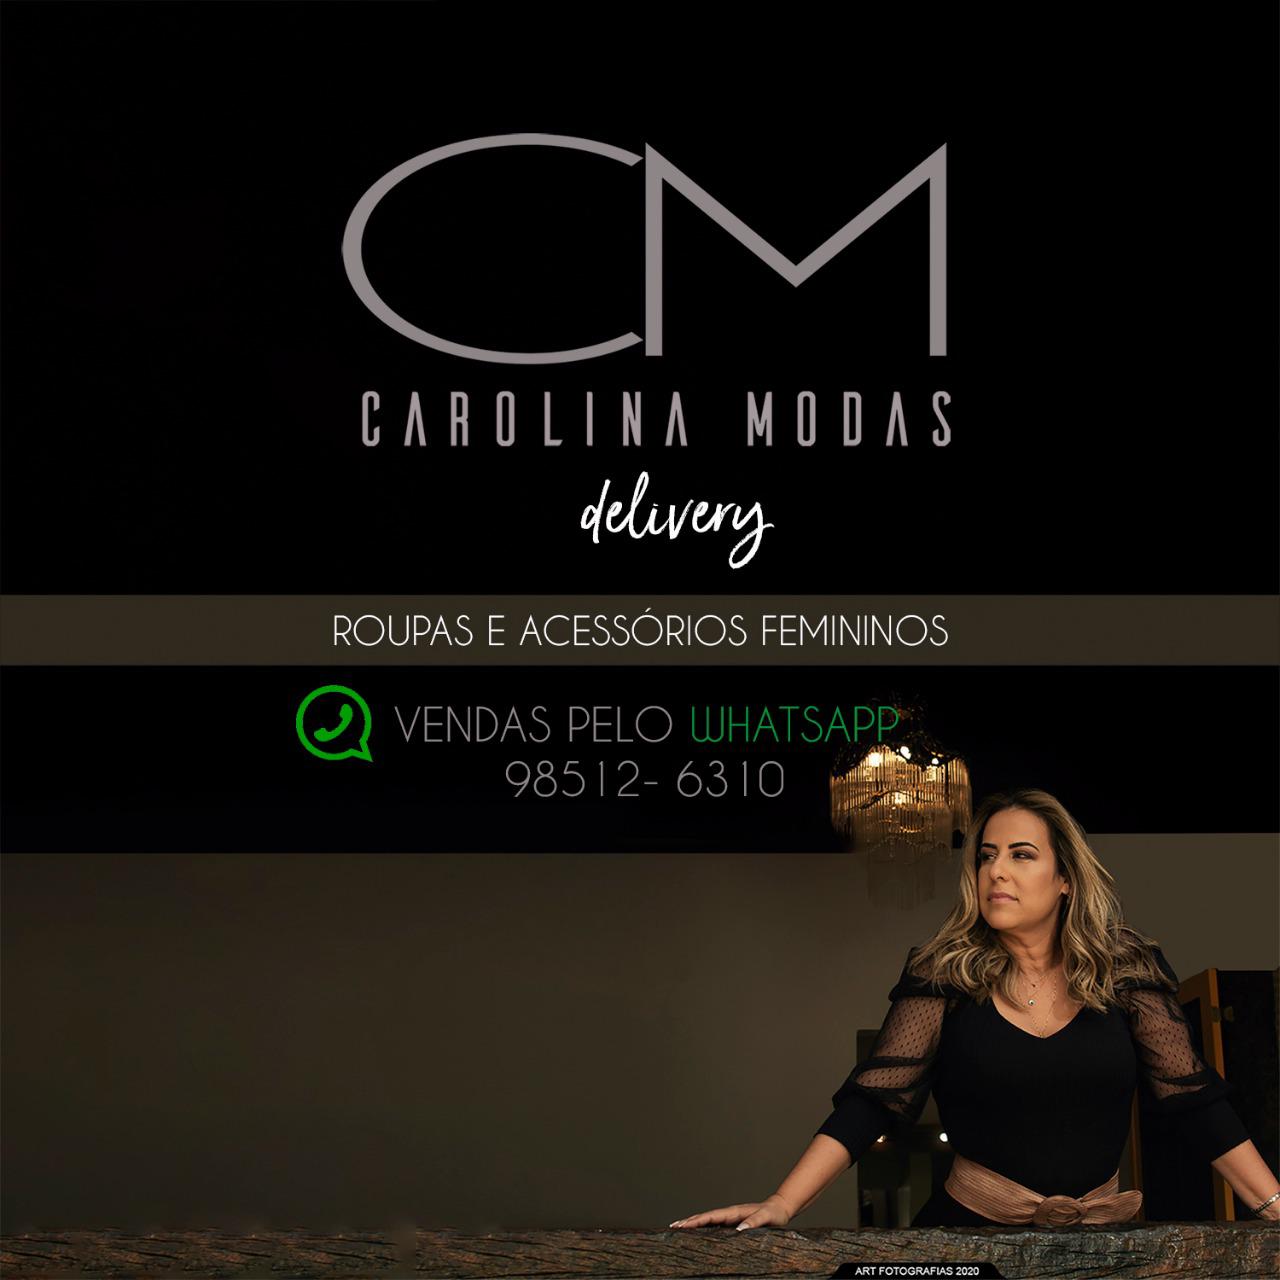 Carolina Modas